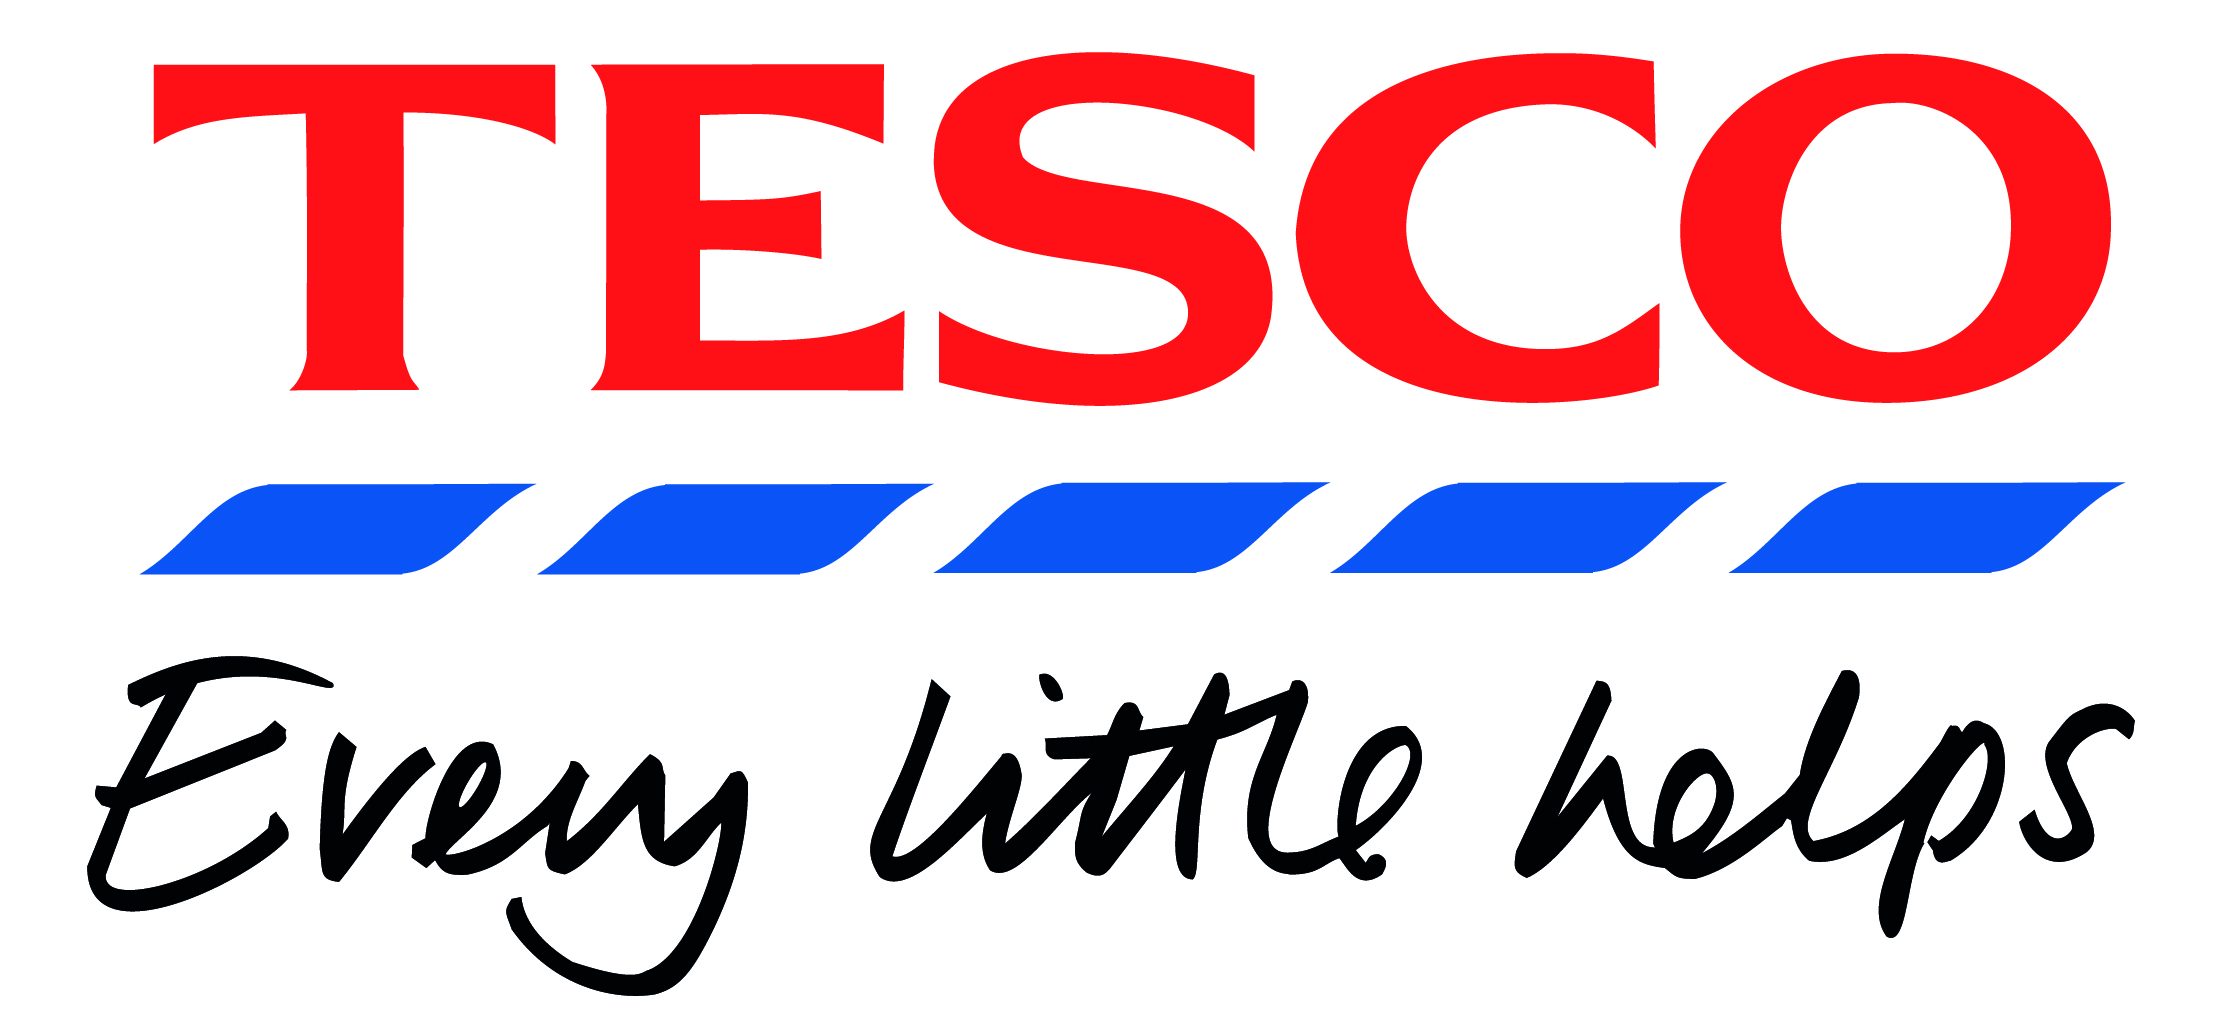 Tesco-logo-002.jpg